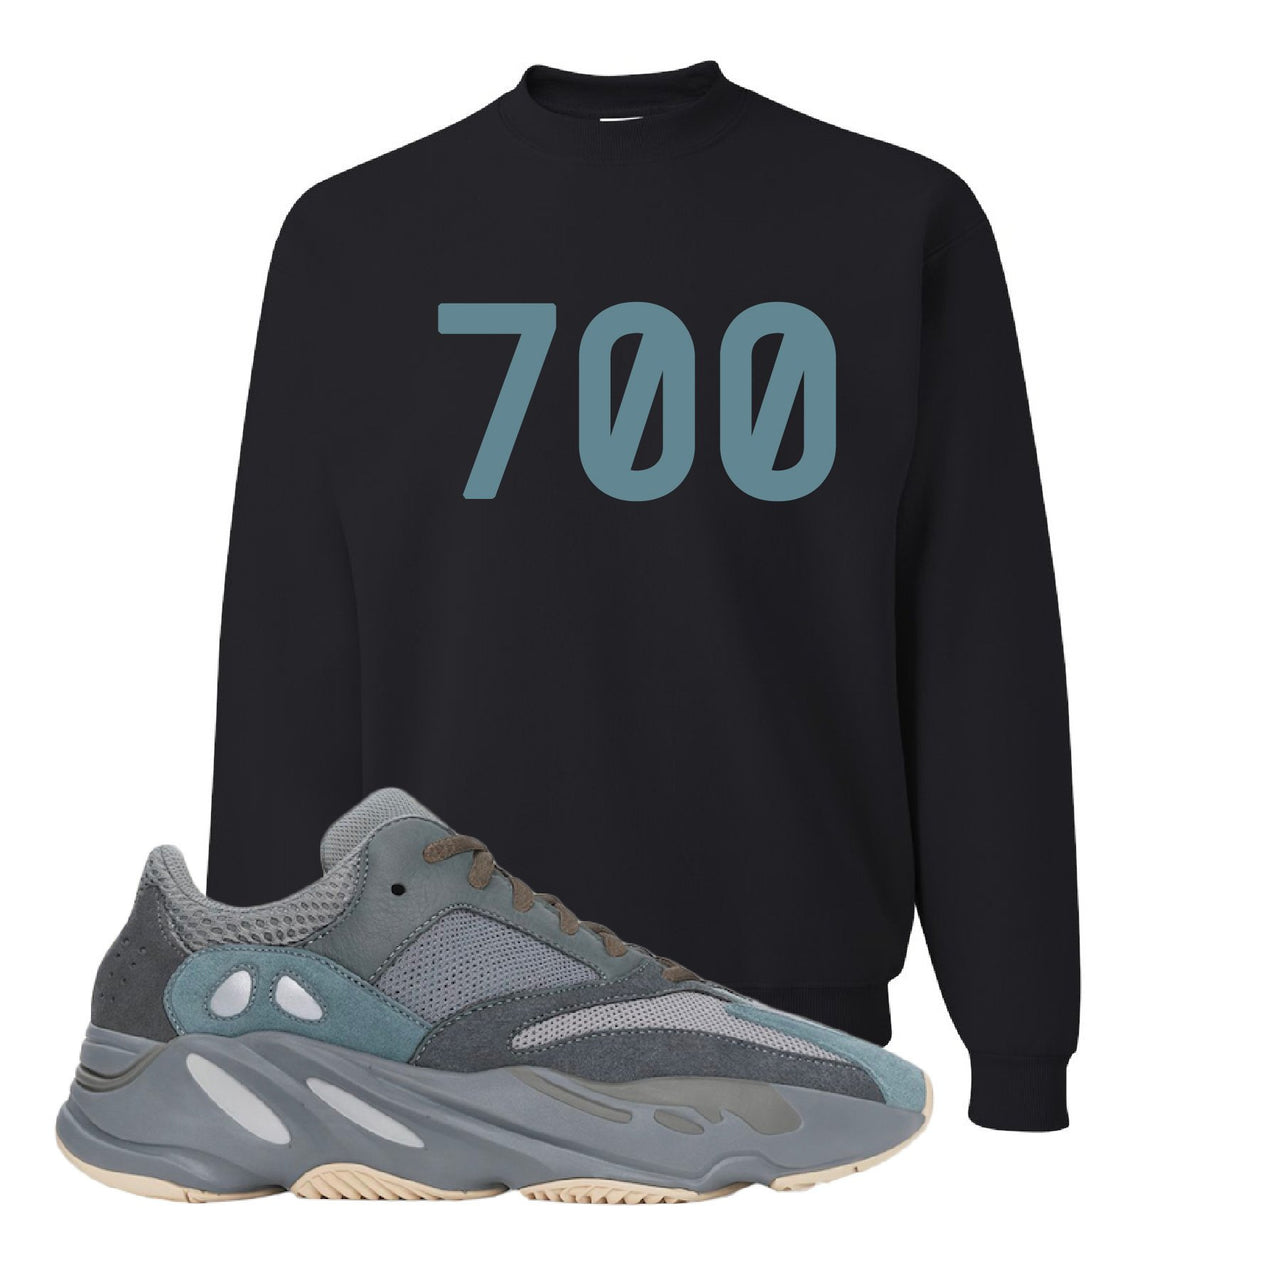 Yeezy Boost 700 Teal Blue 700 Black Sneaker Hook Up Crewneck Sweatshirt